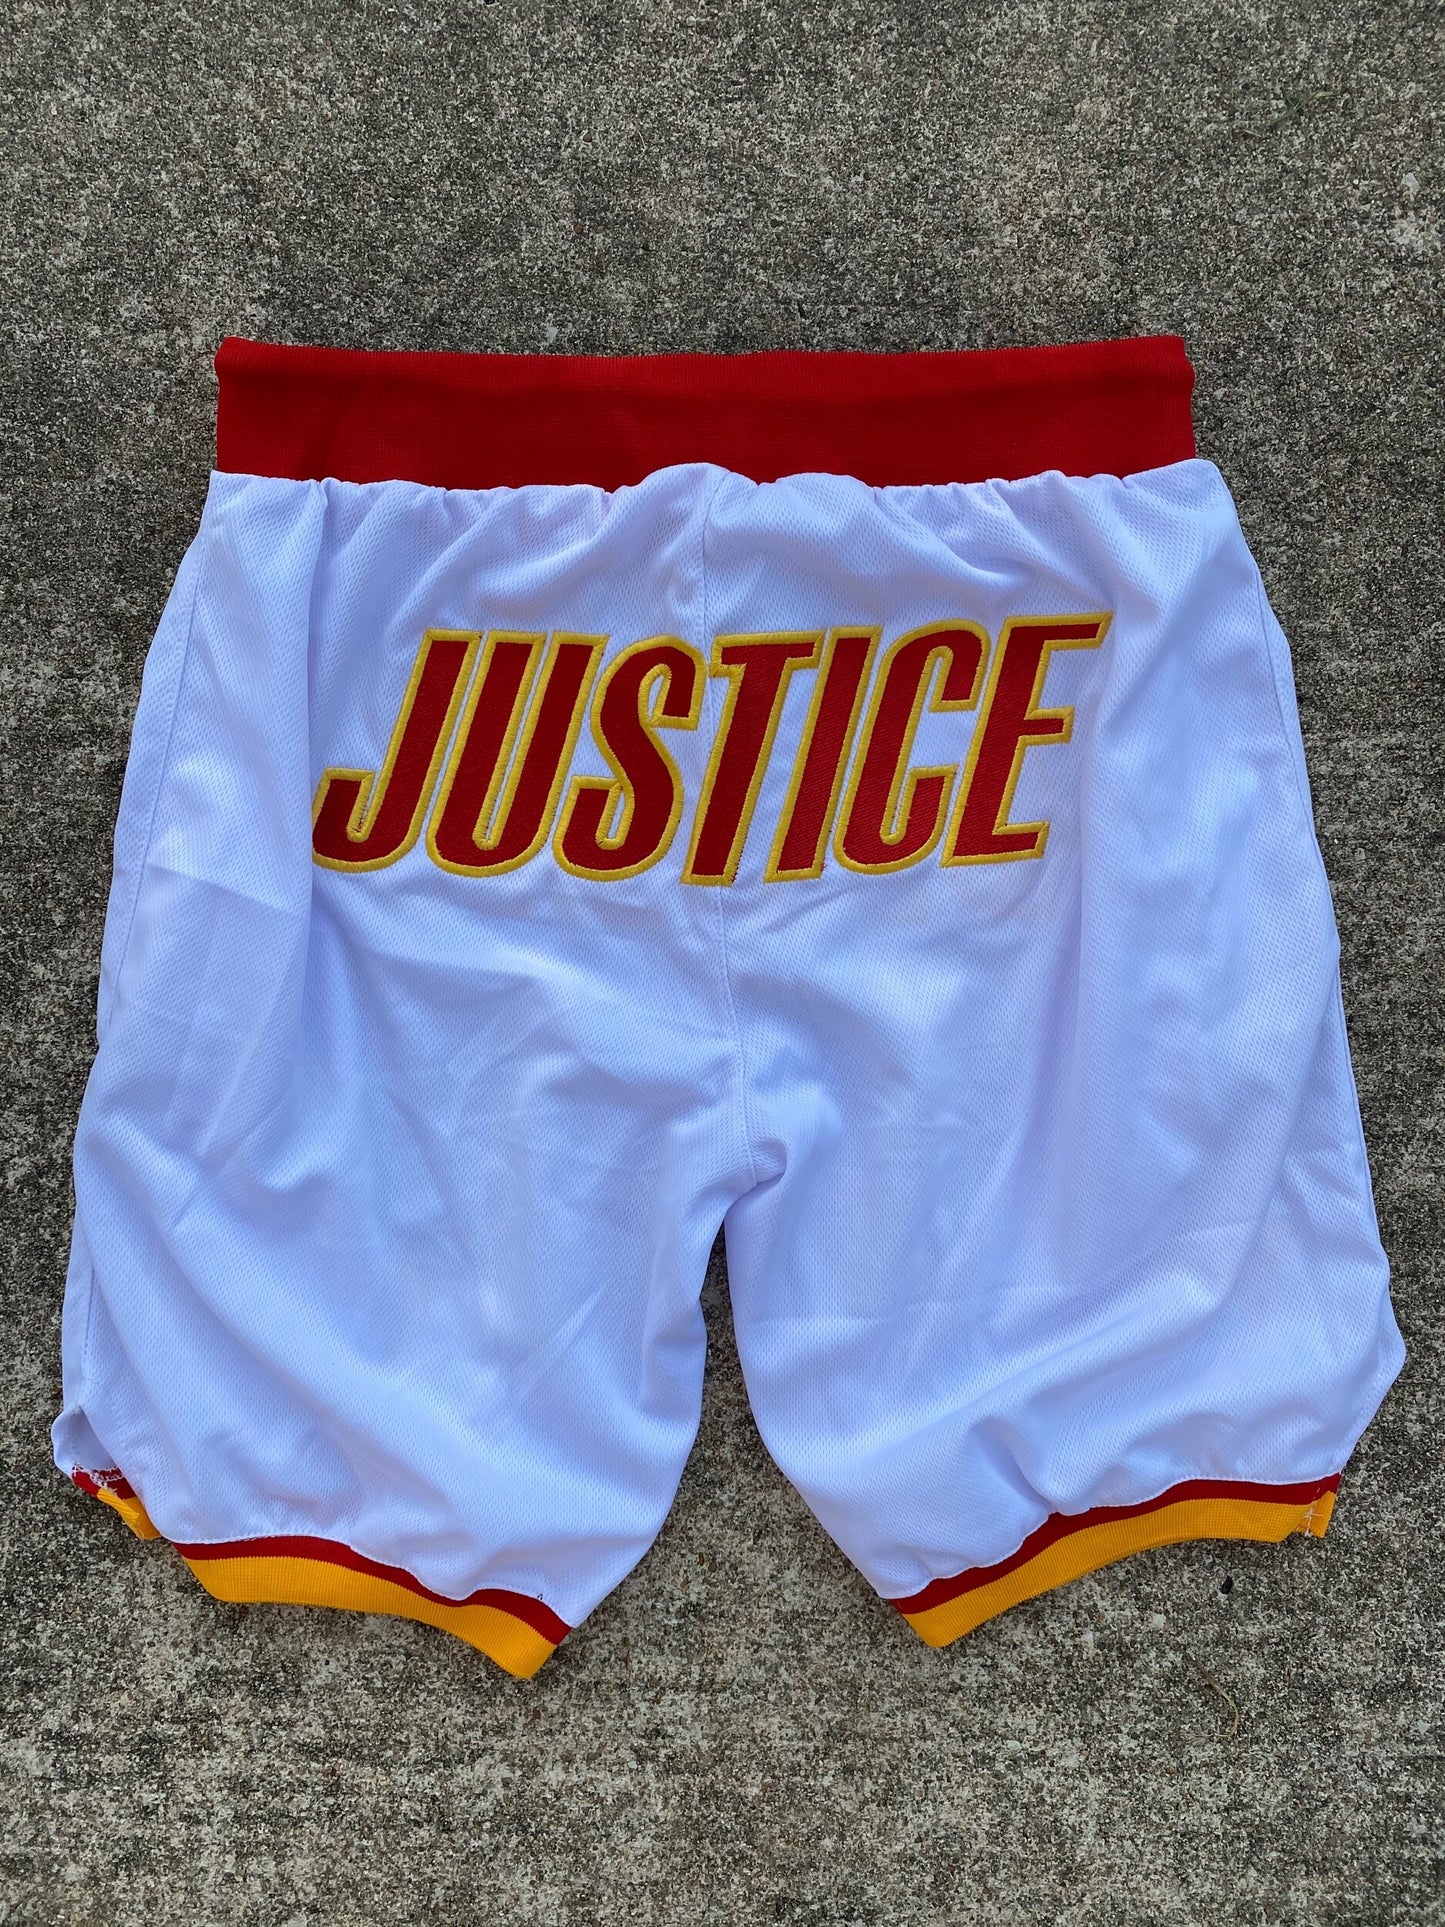 BISON Justice trunks